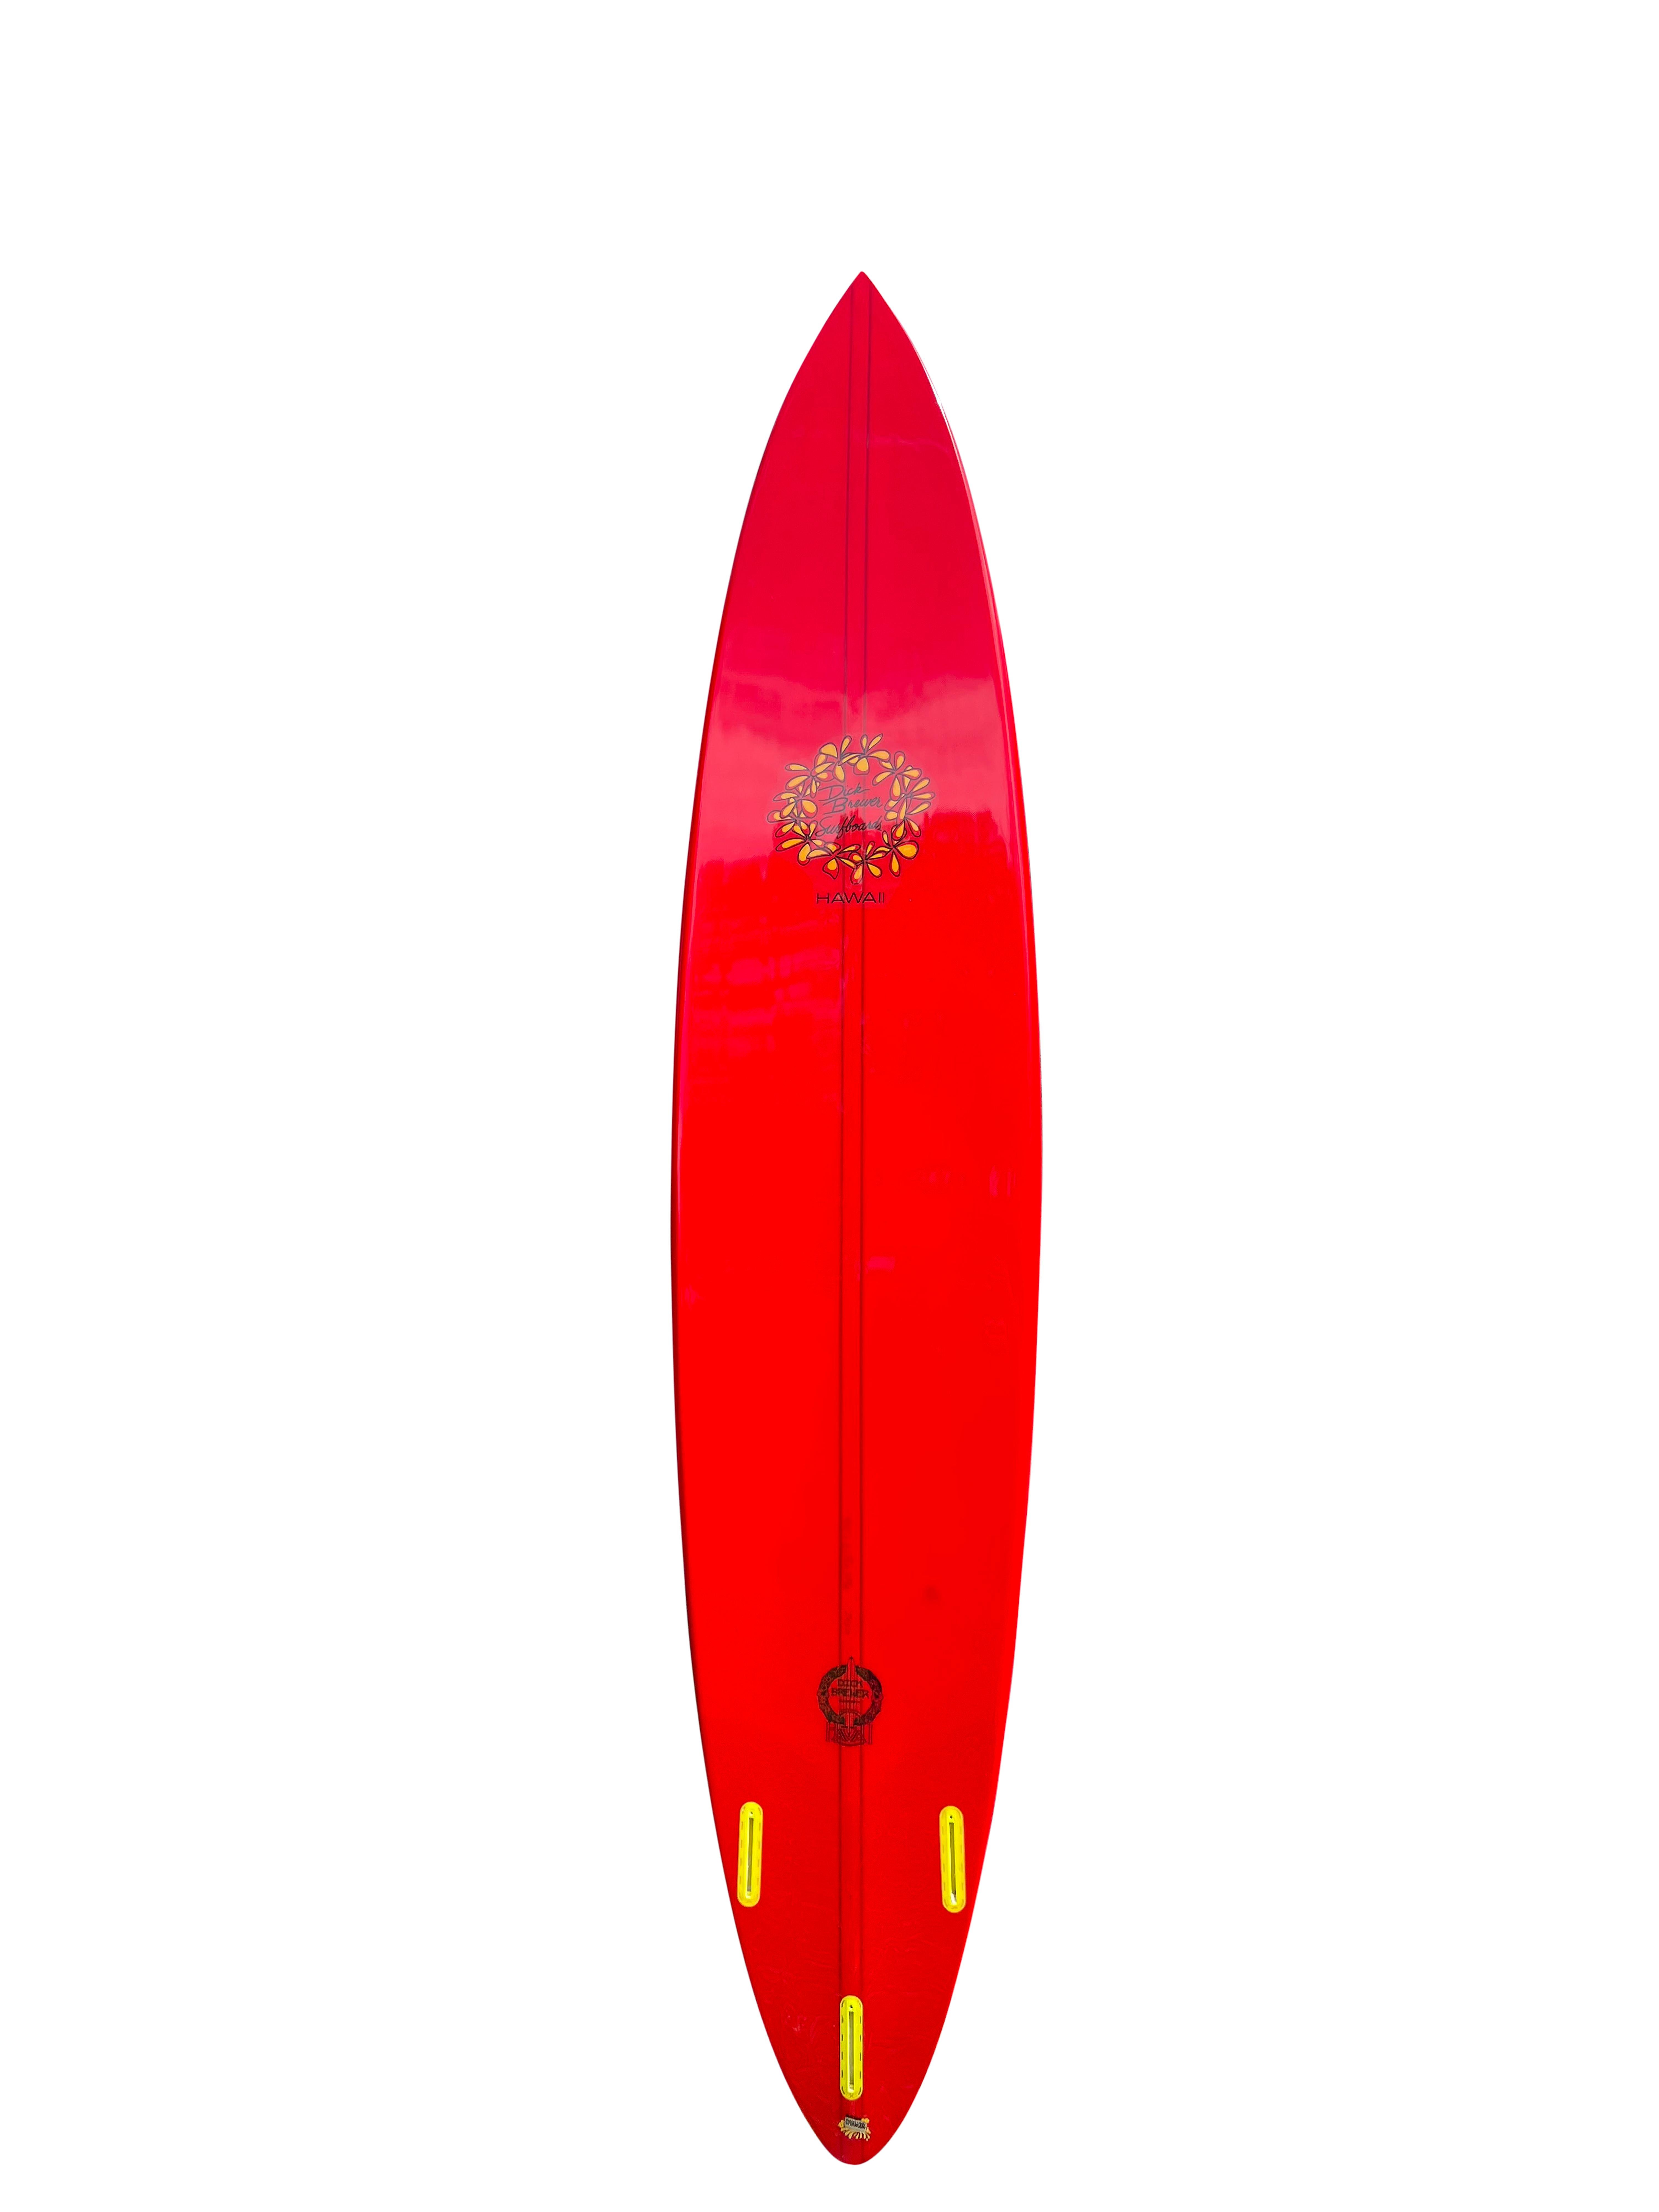 Waimea Bay Big Wave pintail Surfboard des verstorbenen Dick Brewer (1936-2022). Schöner roter Farbton mit leuchtend gelbem Plumeria-Blumenlogo. Thruster (Dreiflossen) mit T-Band-Stringer aus Redwood/Balsaholz. Gebaut, um riesige Wellen am berühmten